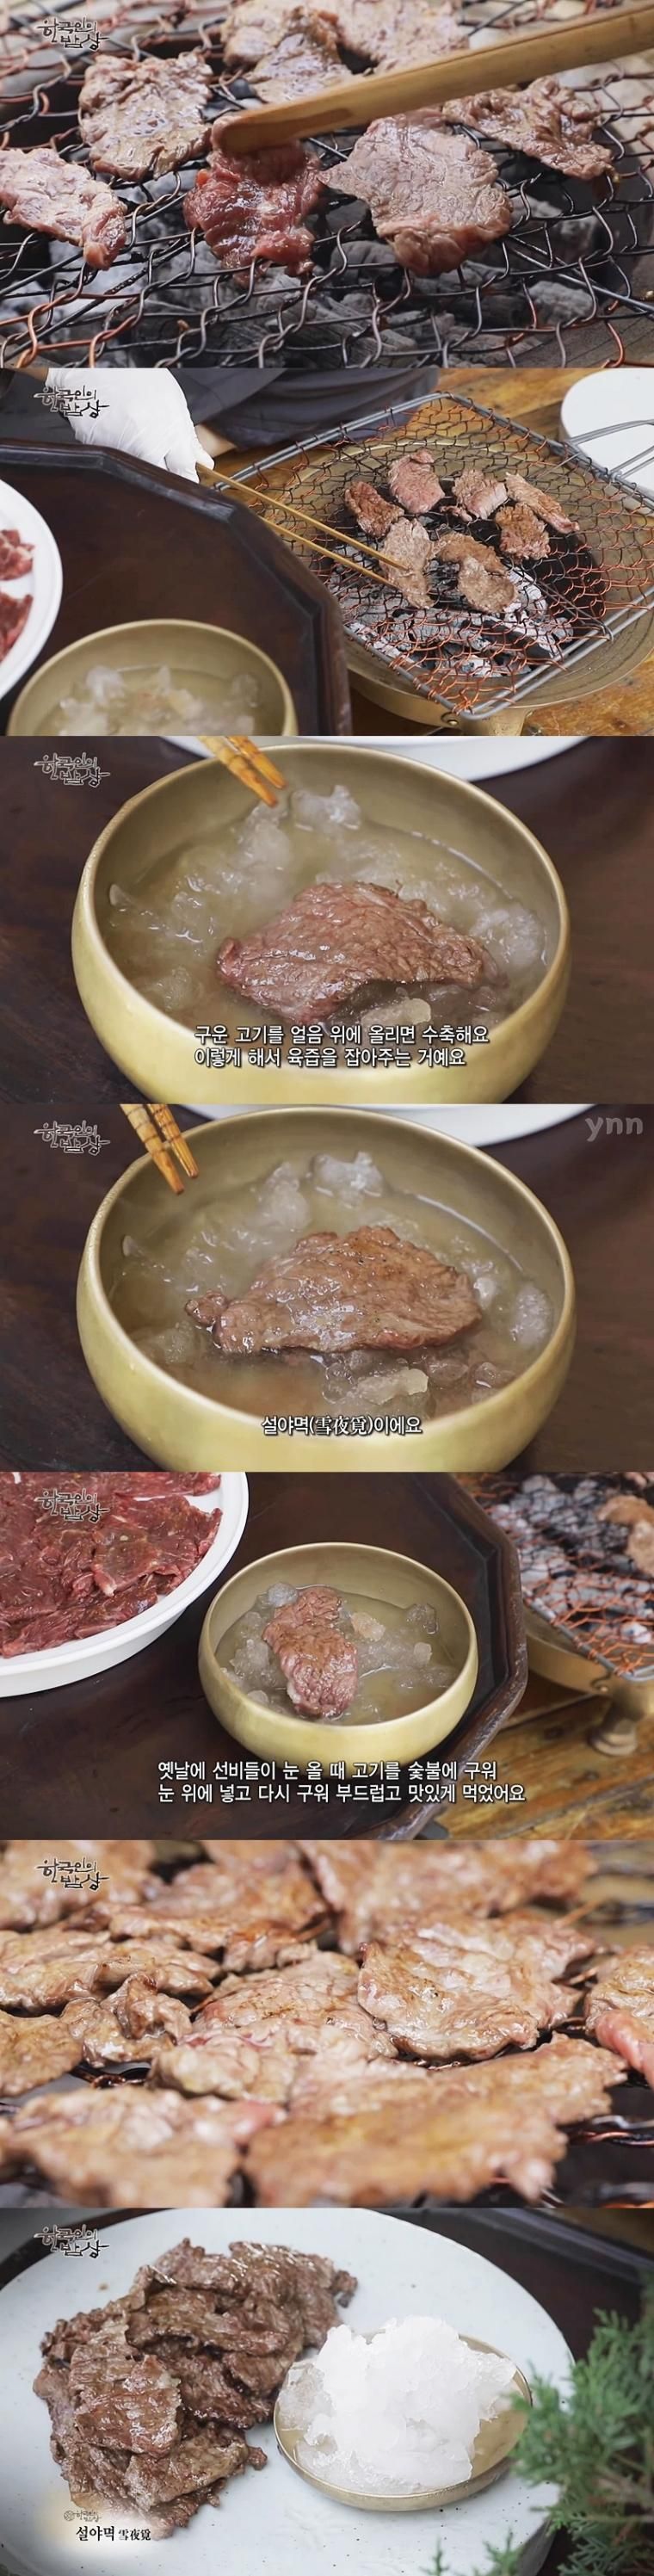 조선시대 선비들이 고기 구워 먹던 방식